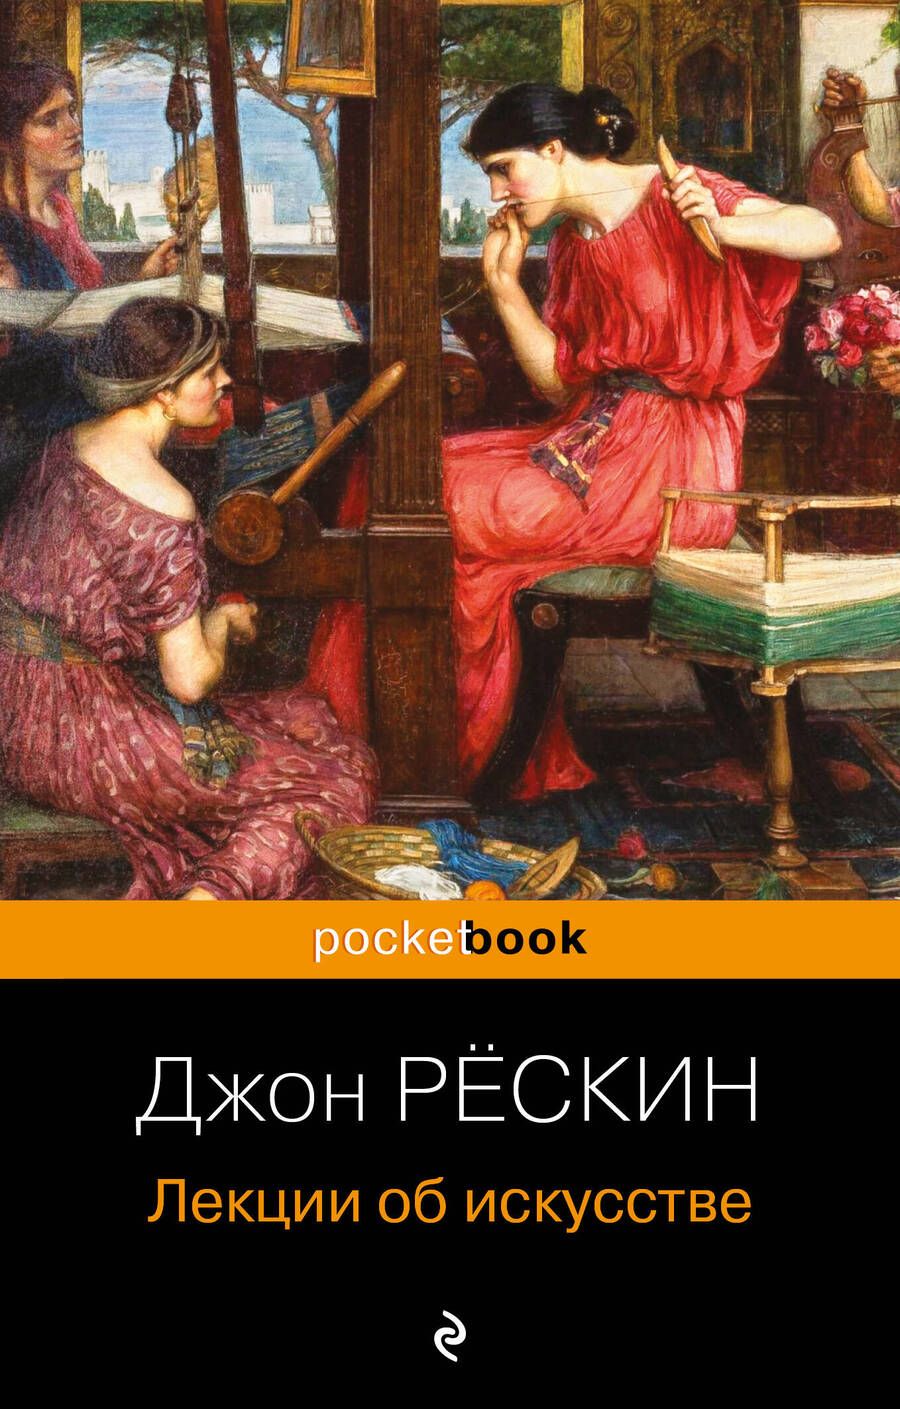 Обложка книги "Рёскин: Лекции об искусстве"